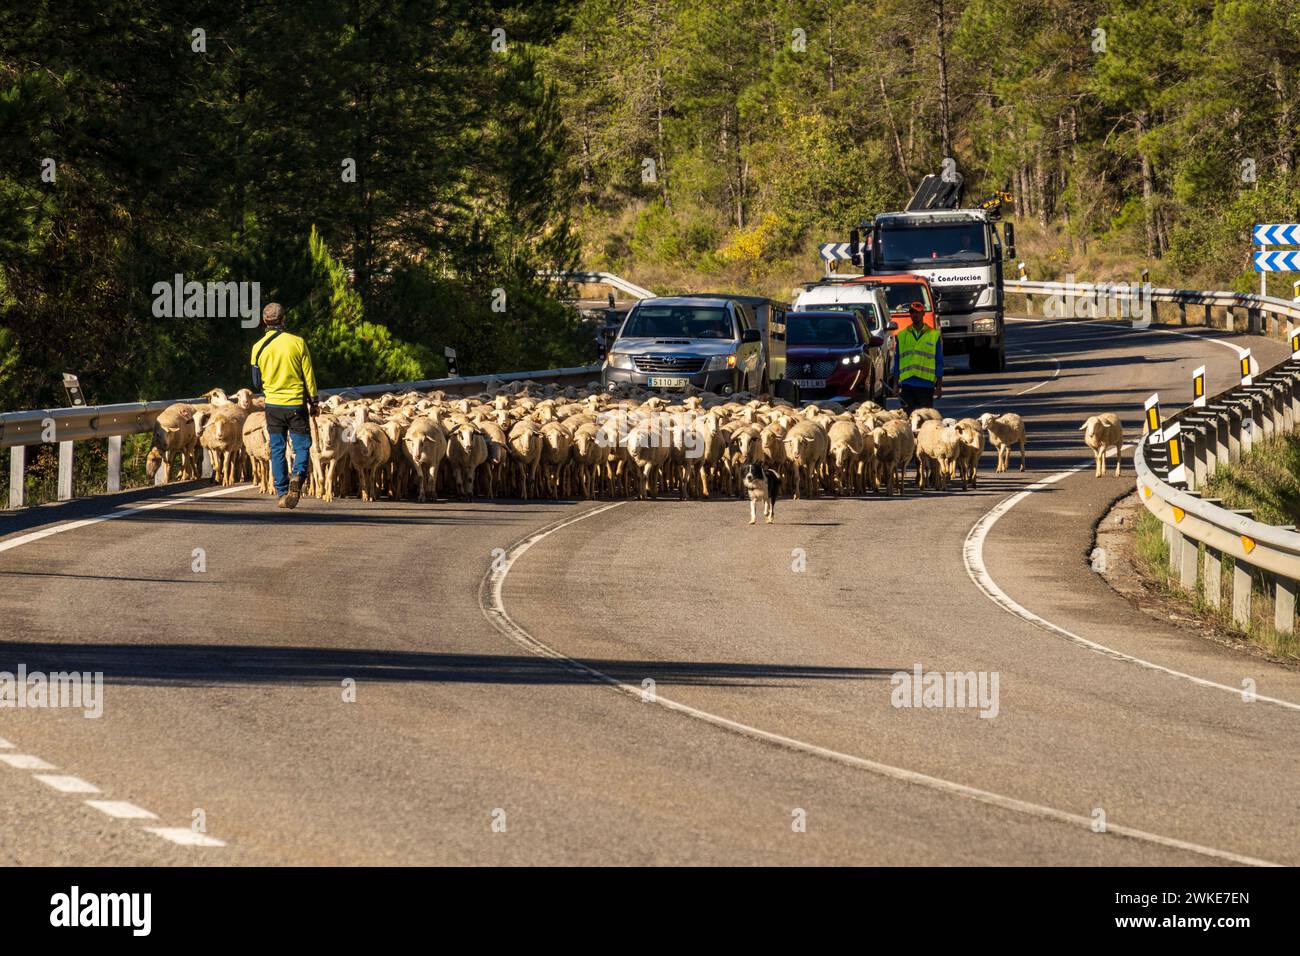 Troupeau de moutons en transhumance sur une route, Puerto del Serrablo, province de Huesca, Espagne. Banque D'Images